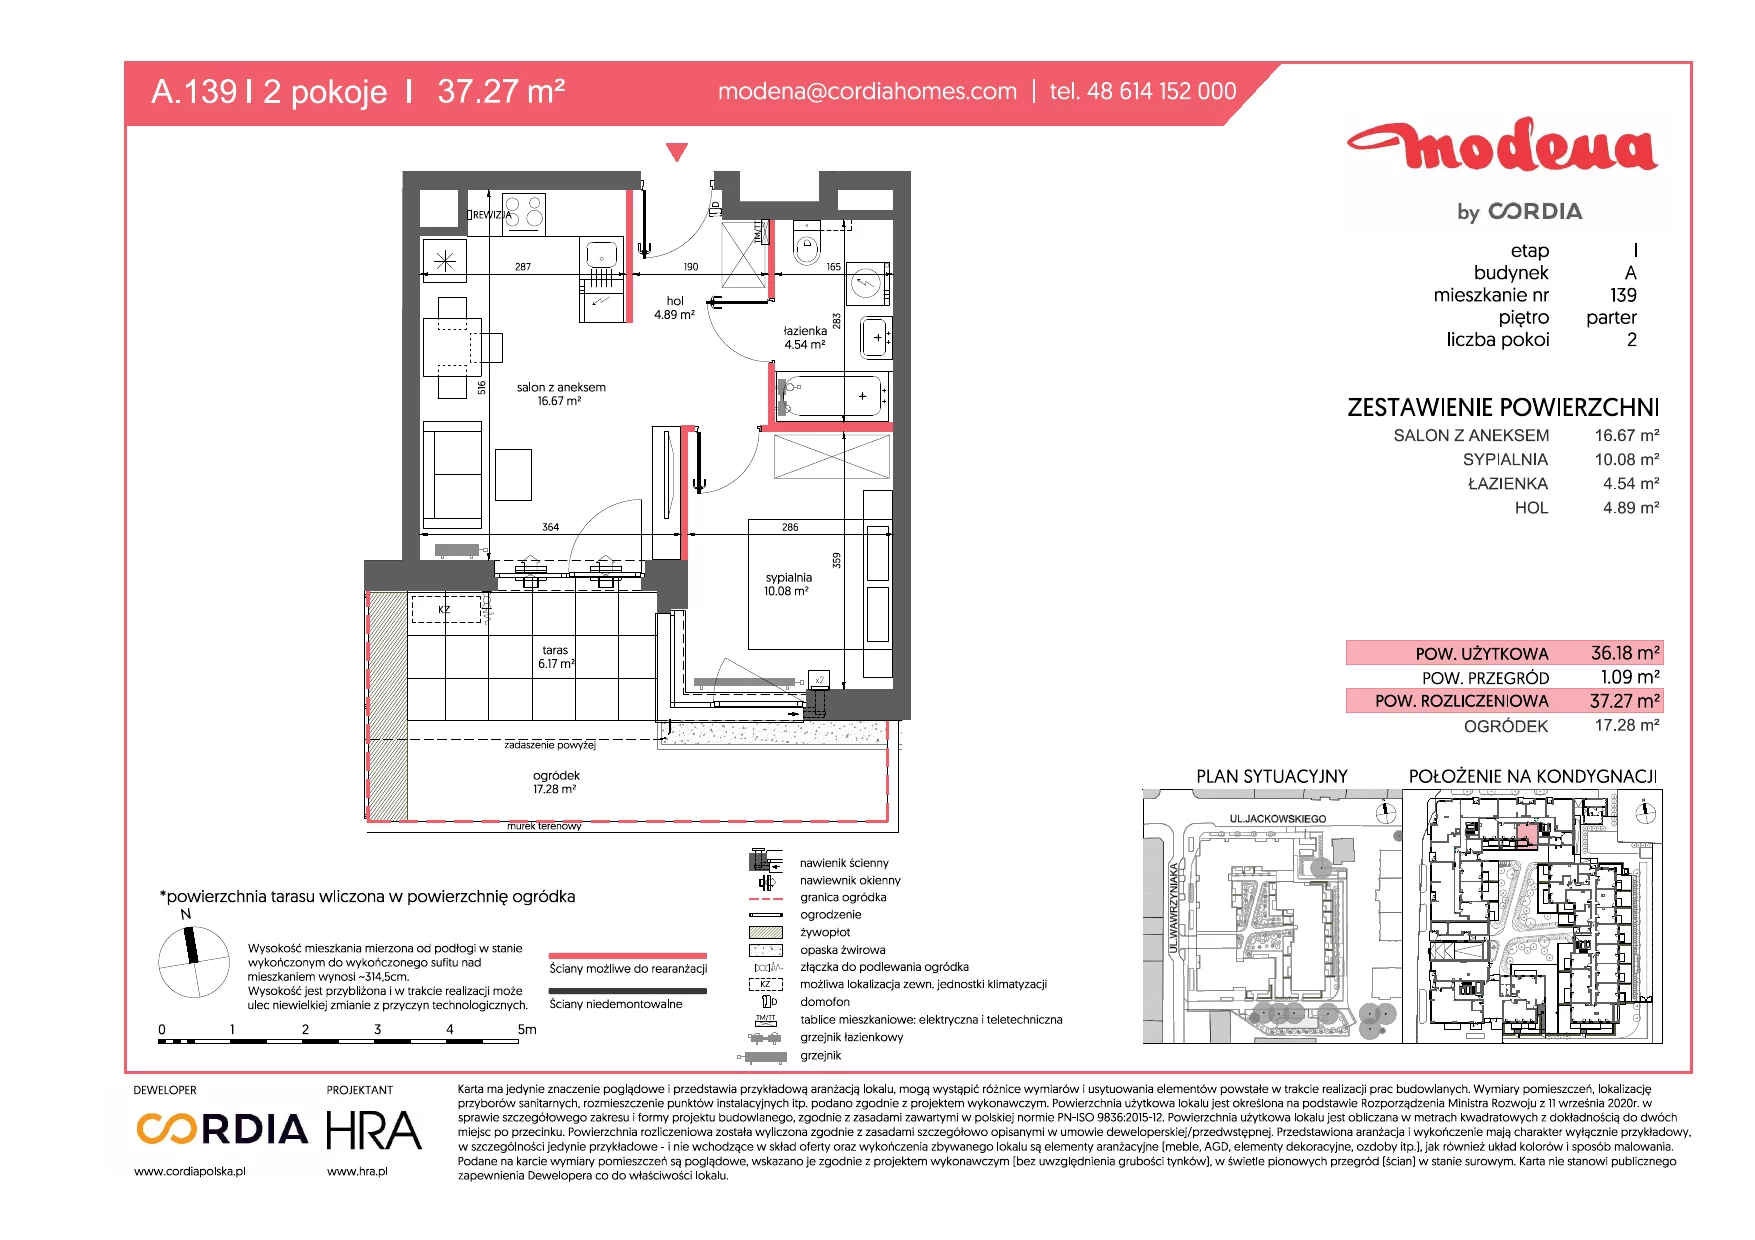 Mieszkanie 37,27 m², parter, oferta nr A.139, Modena, Poznań, Jeżyce, Jeżyce, ul. Jackowskiego 24